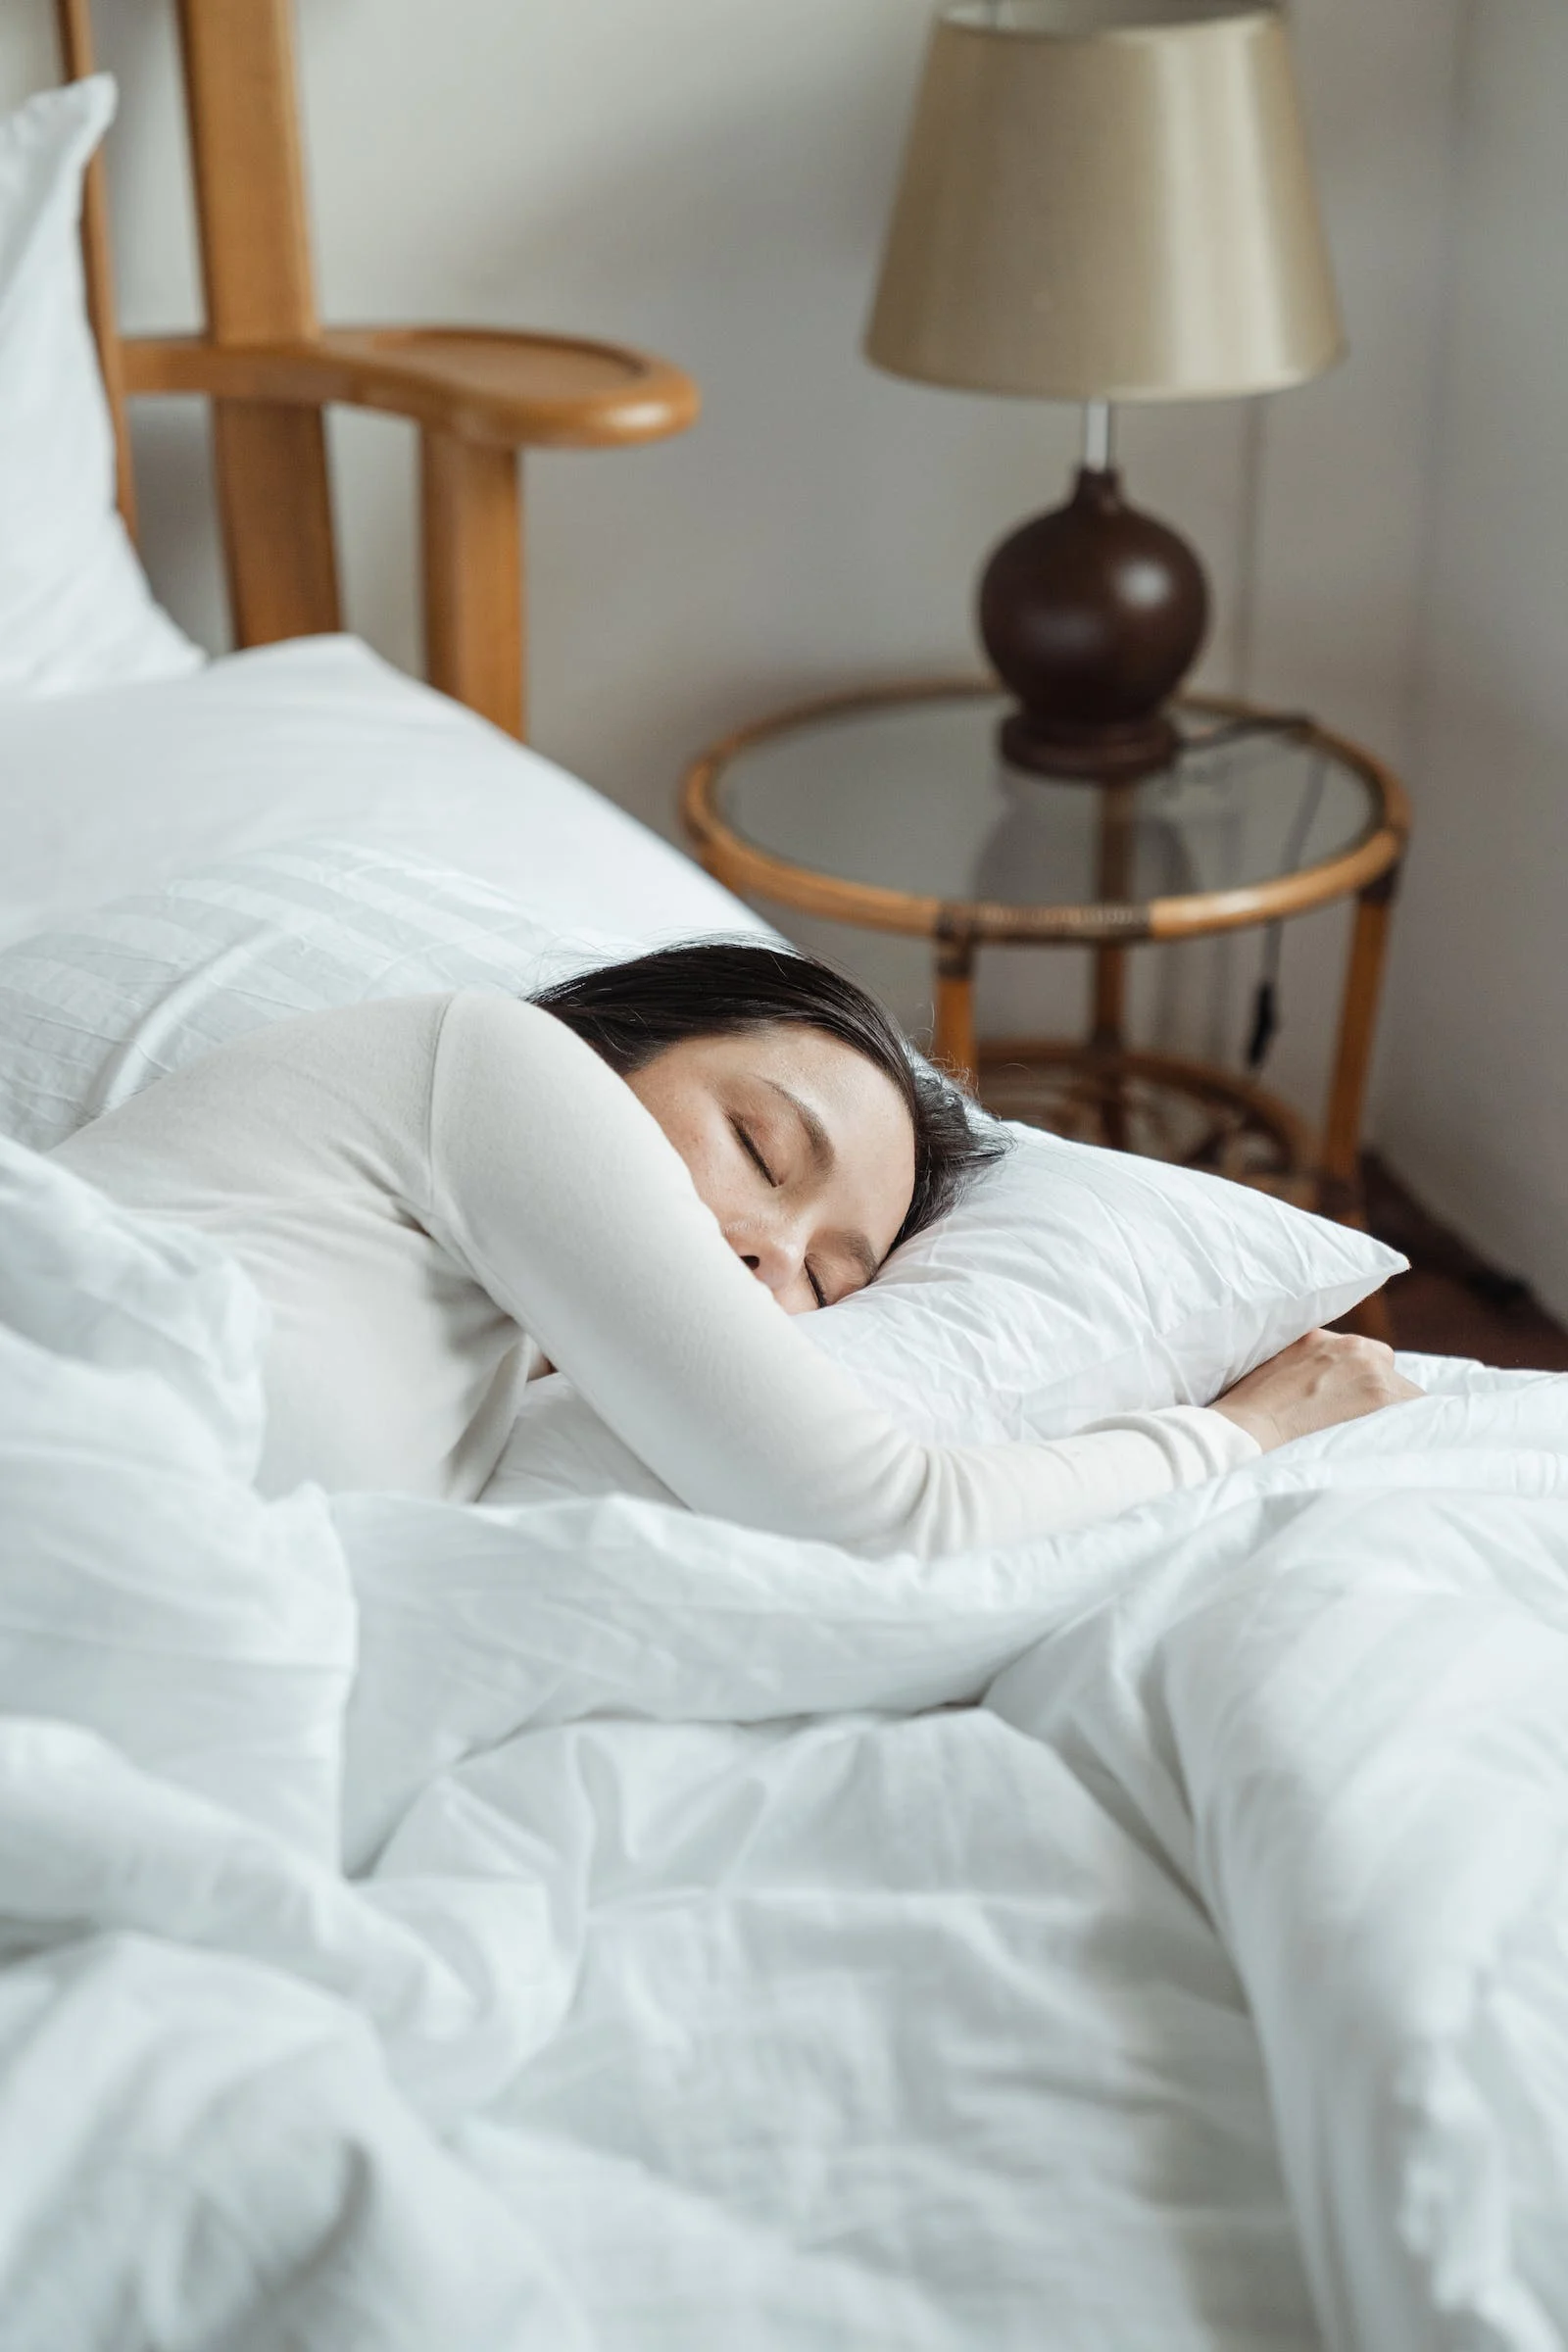 Consigli pratici per dormire meglio